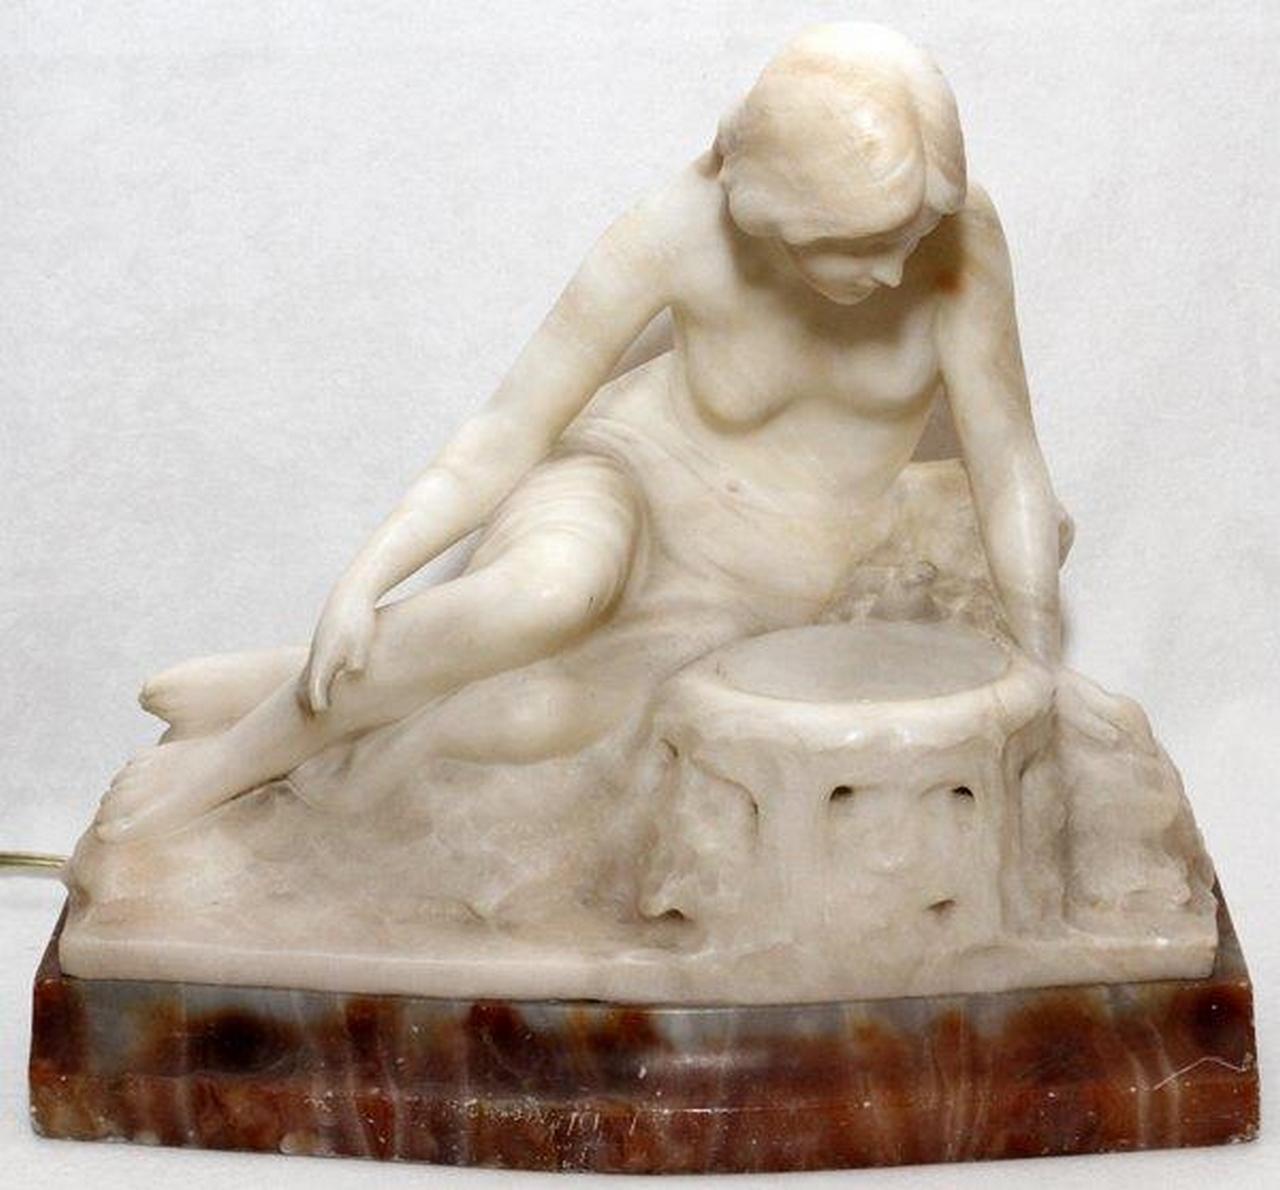 Der folgende Artikel ist ein Museum Qualität Original schöne italienische weißem Marmor und Alabaster Lampe Skulptur einer figuralen nackte Frau sitzt auf einem Felsen von Künstler Ferdinando Vichi (1875-1925), Circa 1895. Signiert F. Vichi